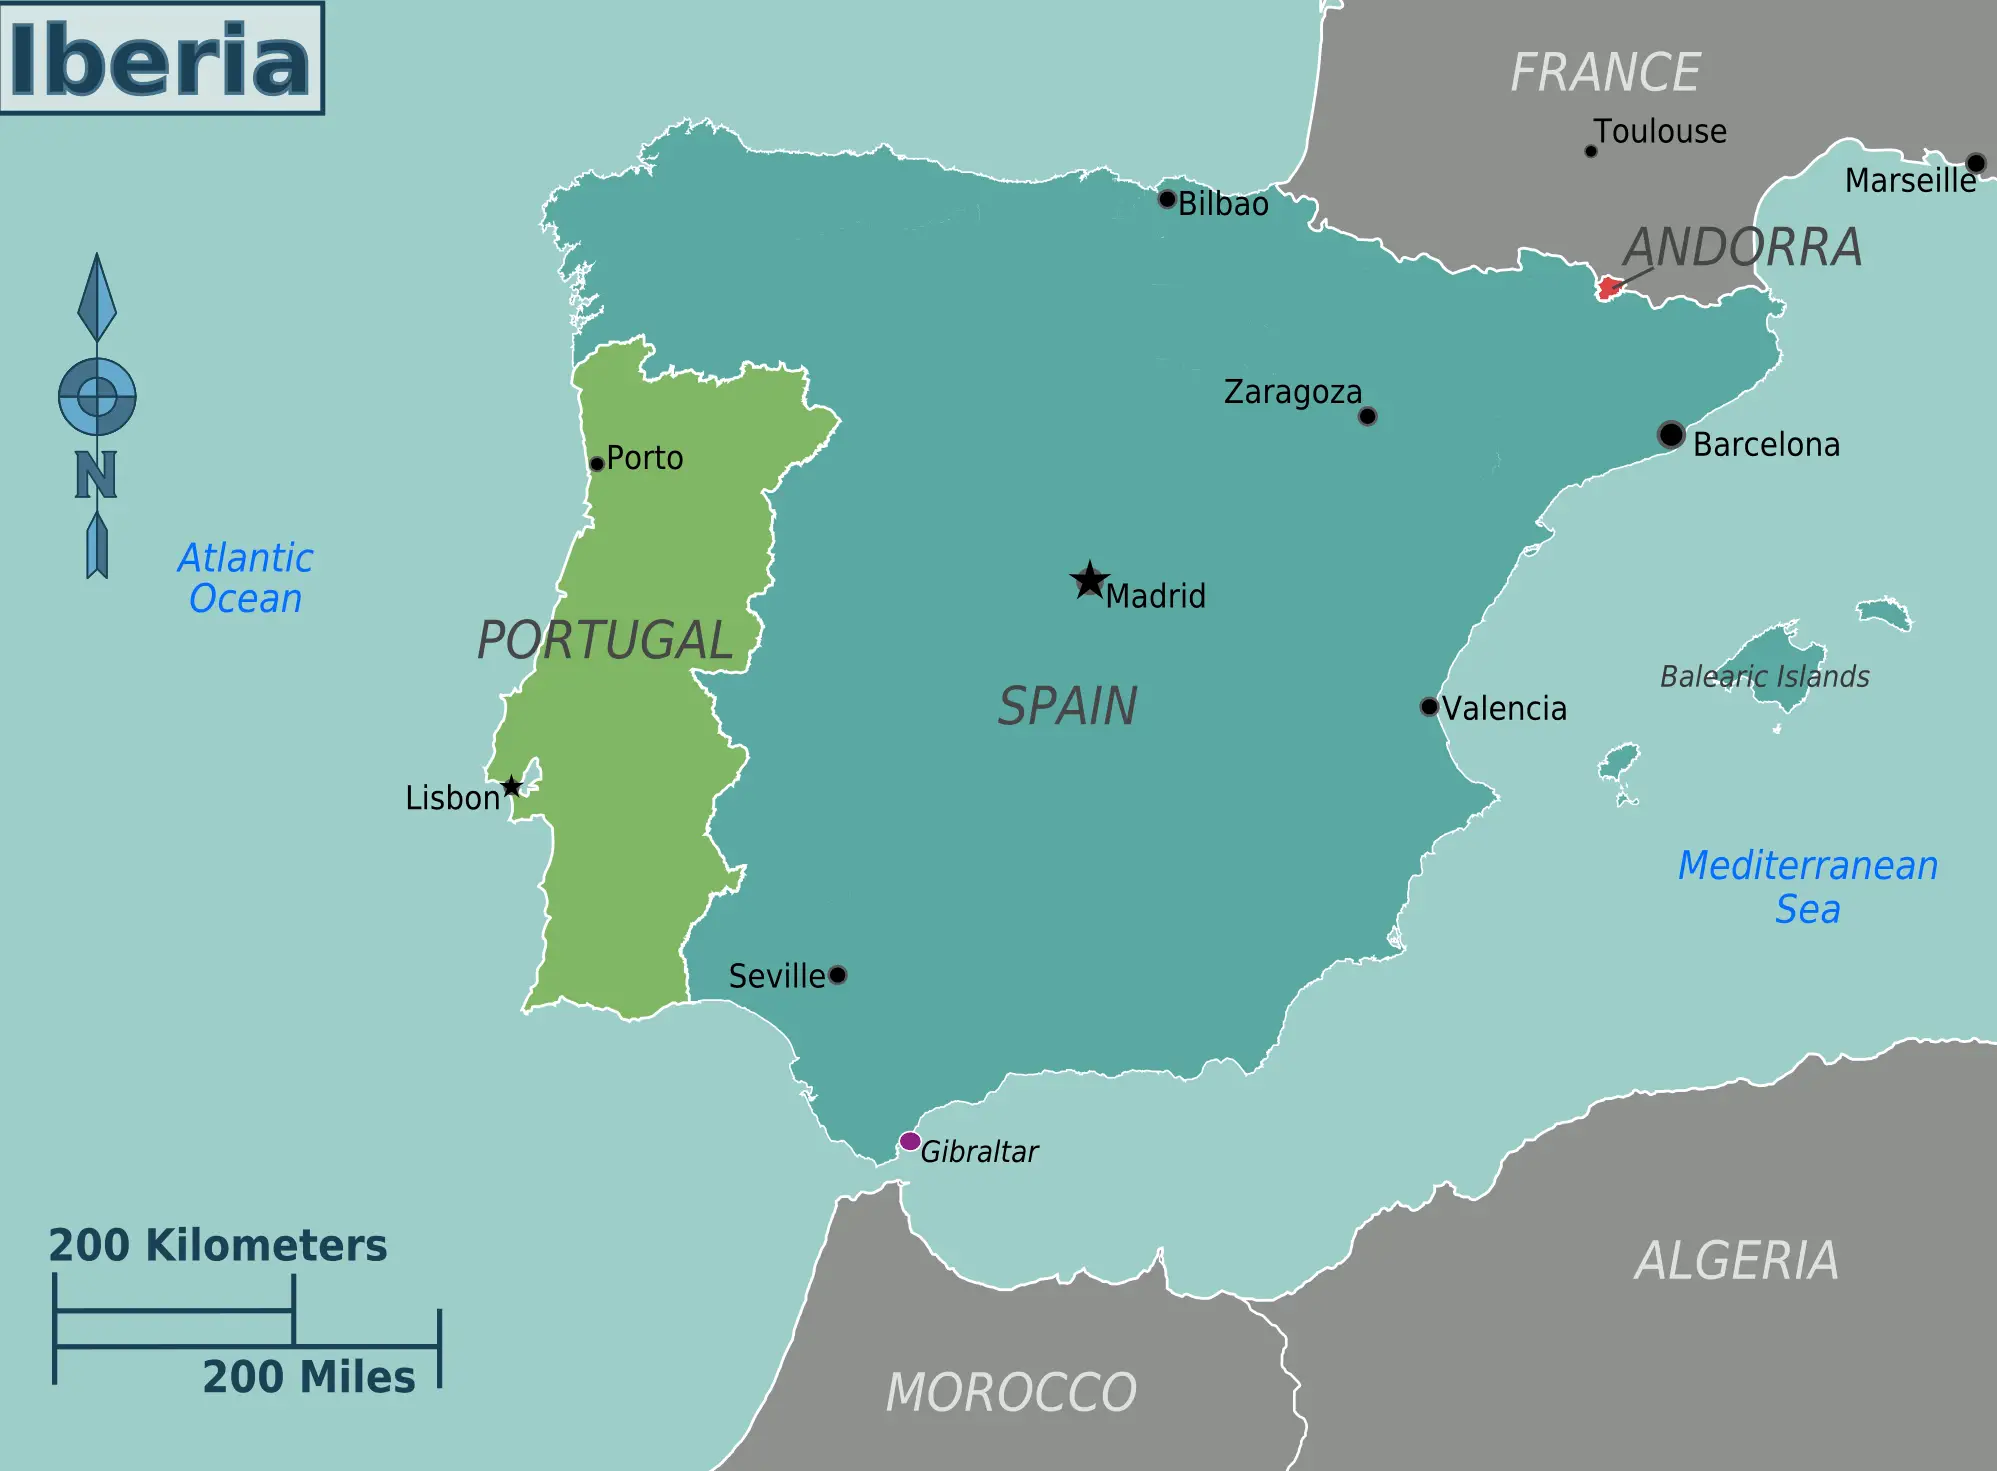 Iberia_bolgeler_harita.png